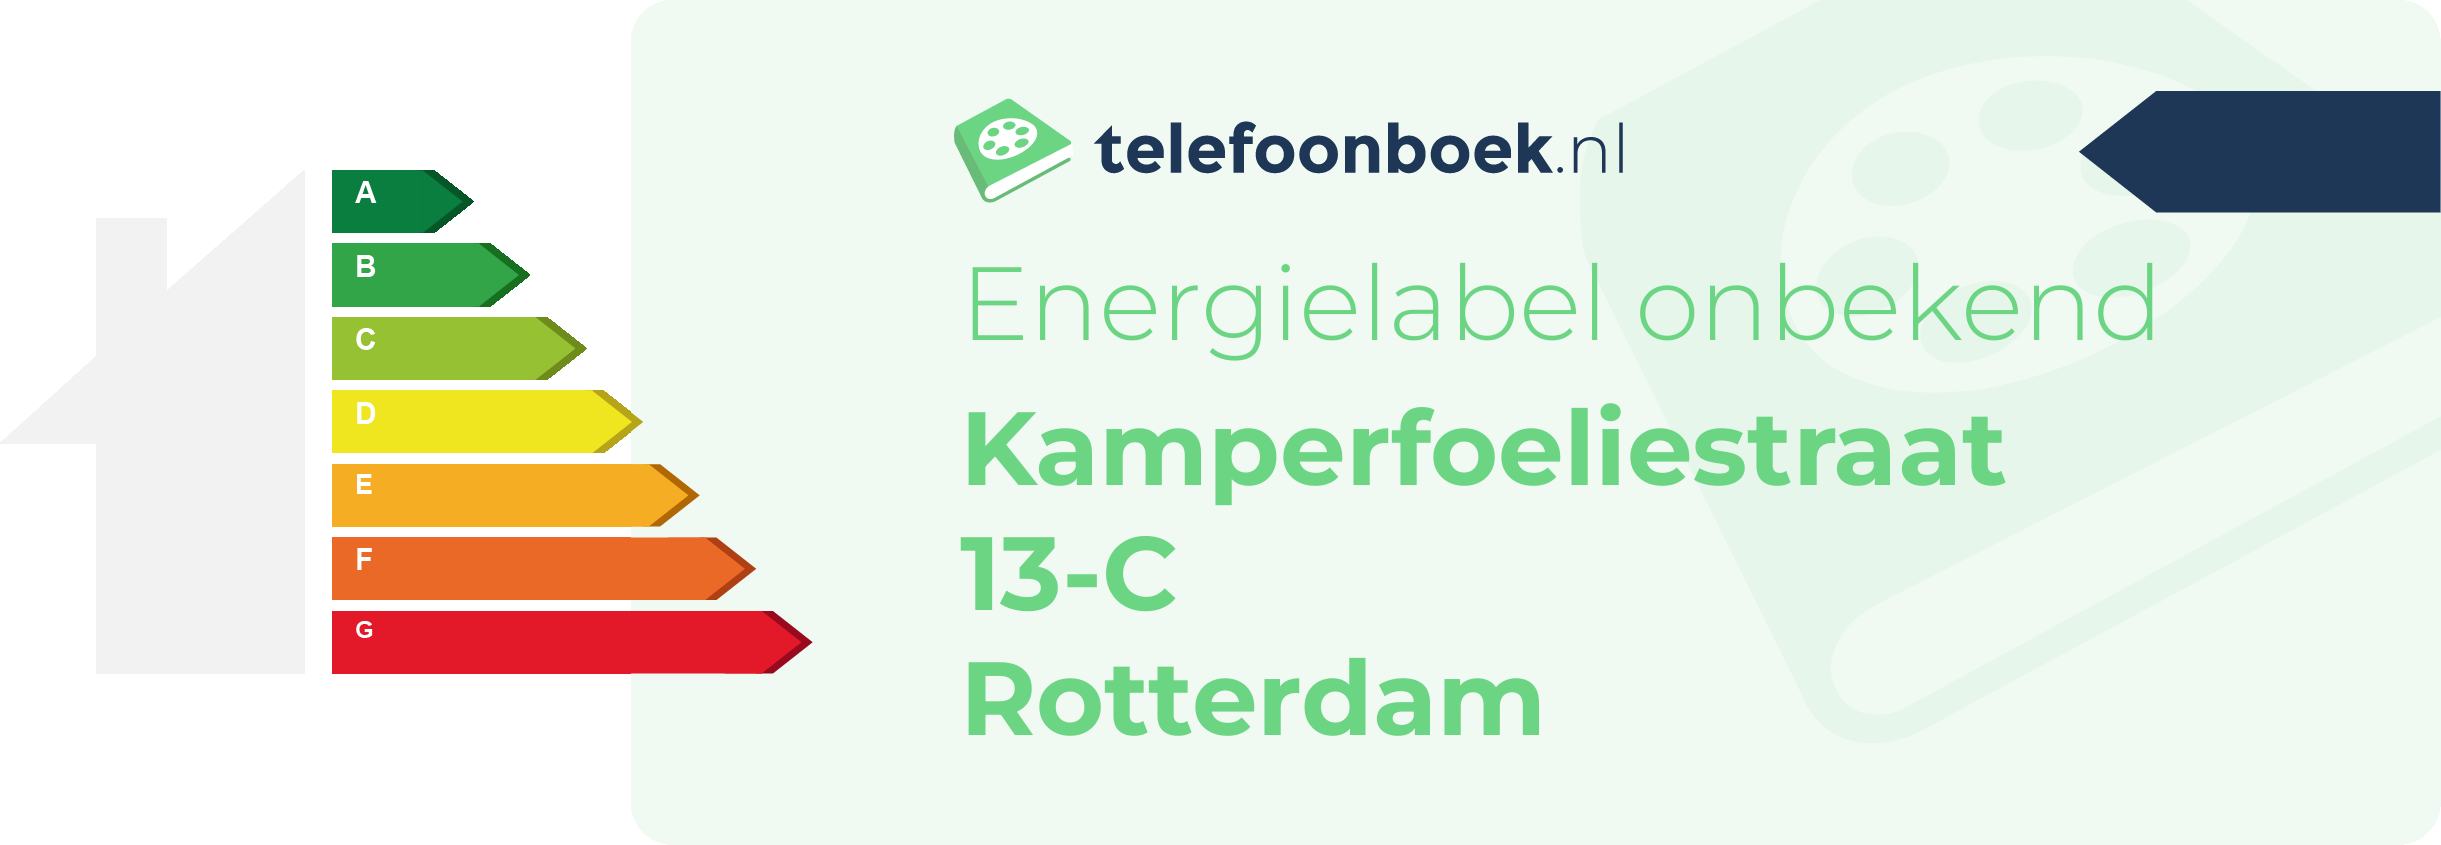 Energielabel Kamperfoeliestraat 13-C Rotterdam